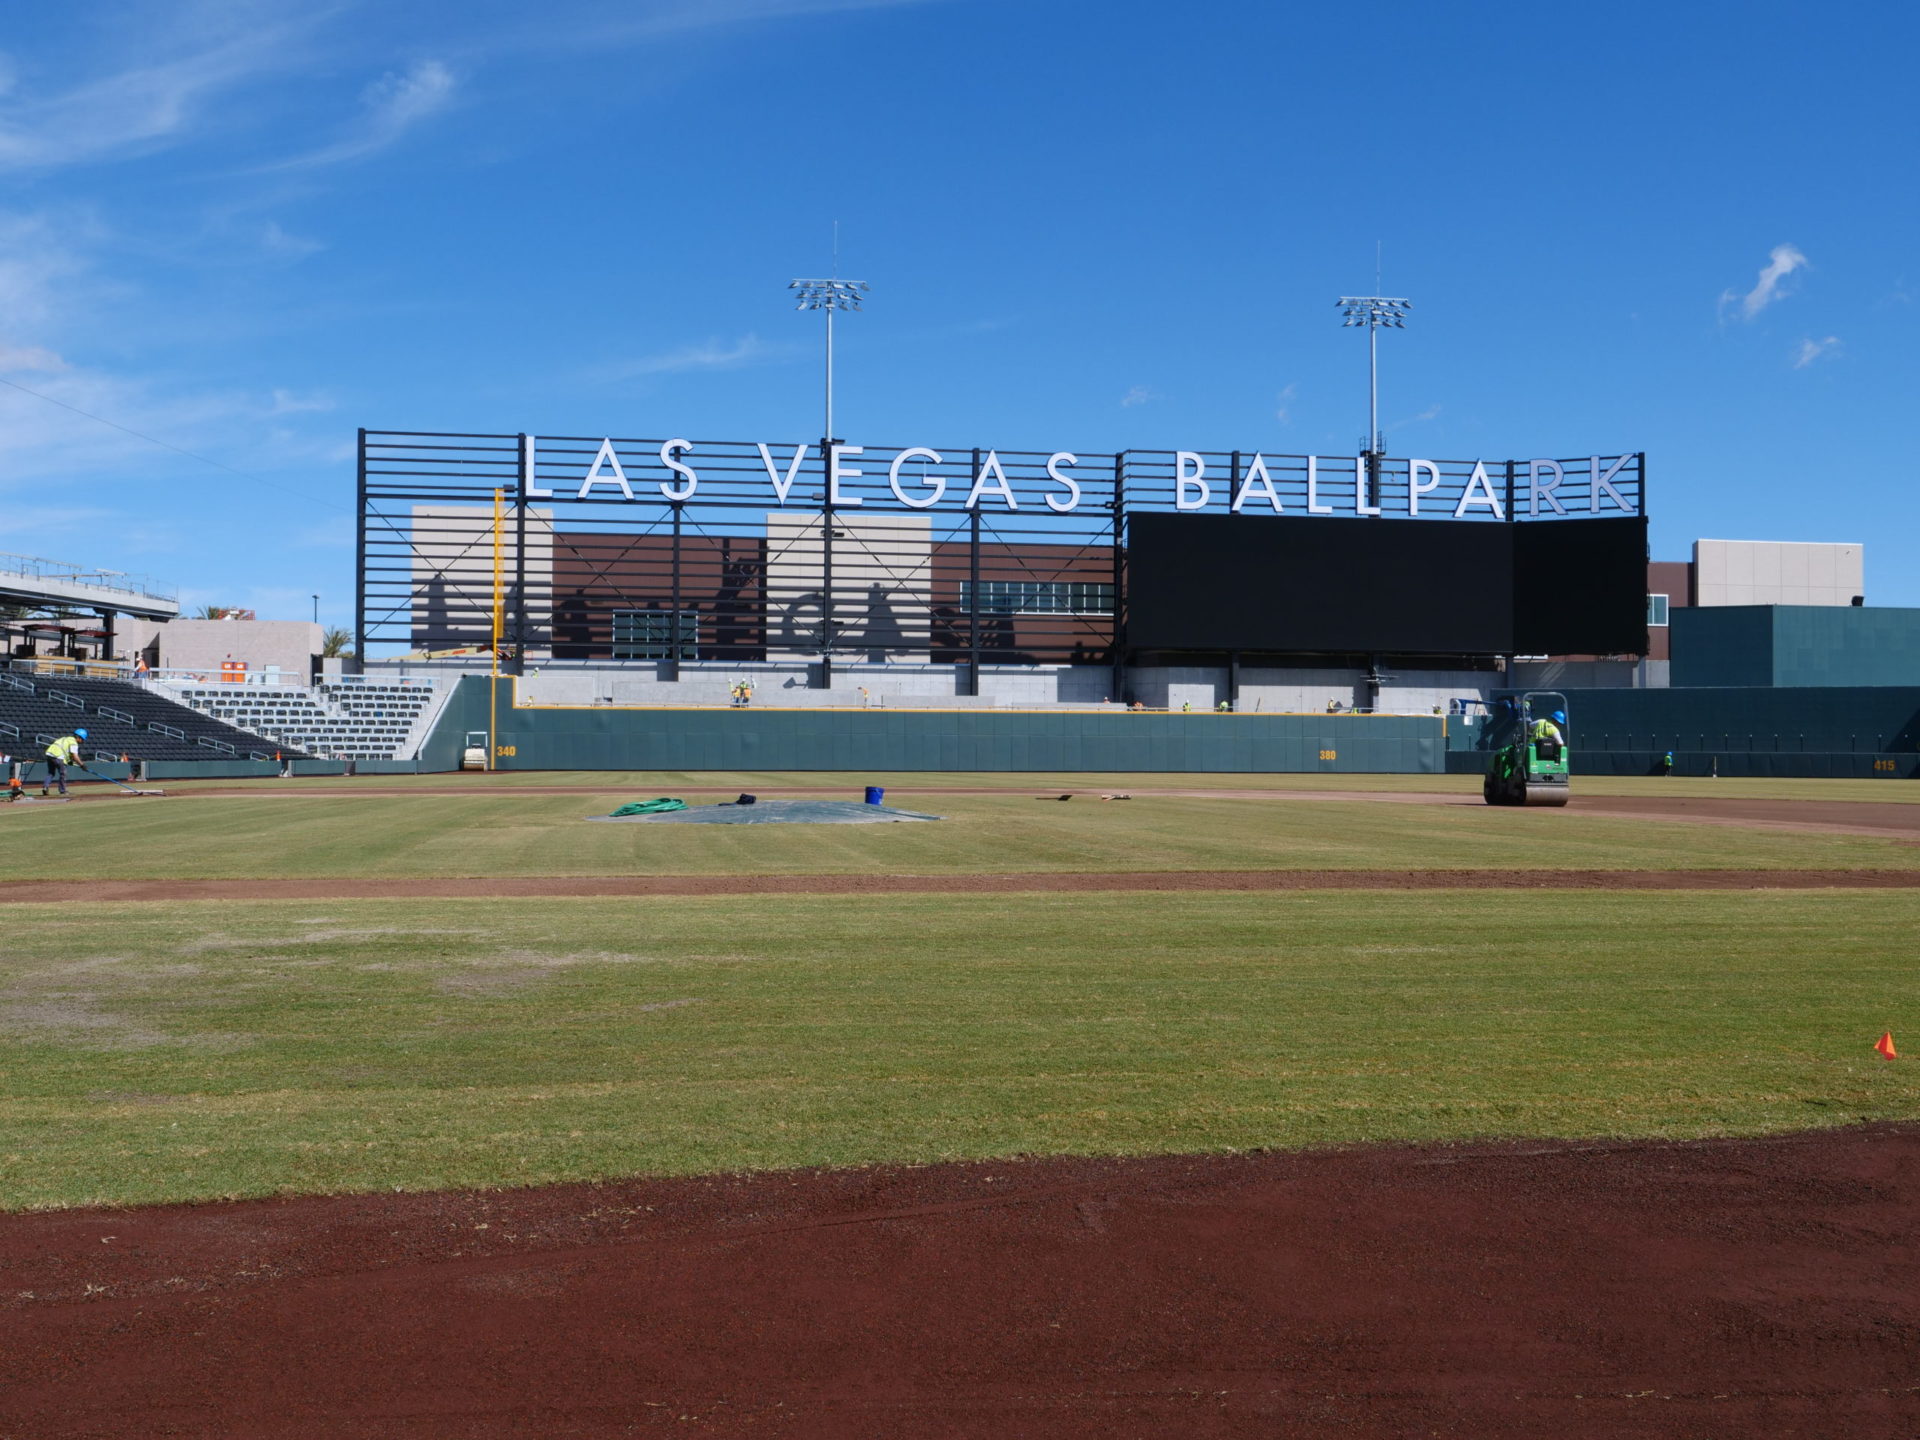 Image from the Gallery: Las Vegas Ballpark – Las Vegas, NV